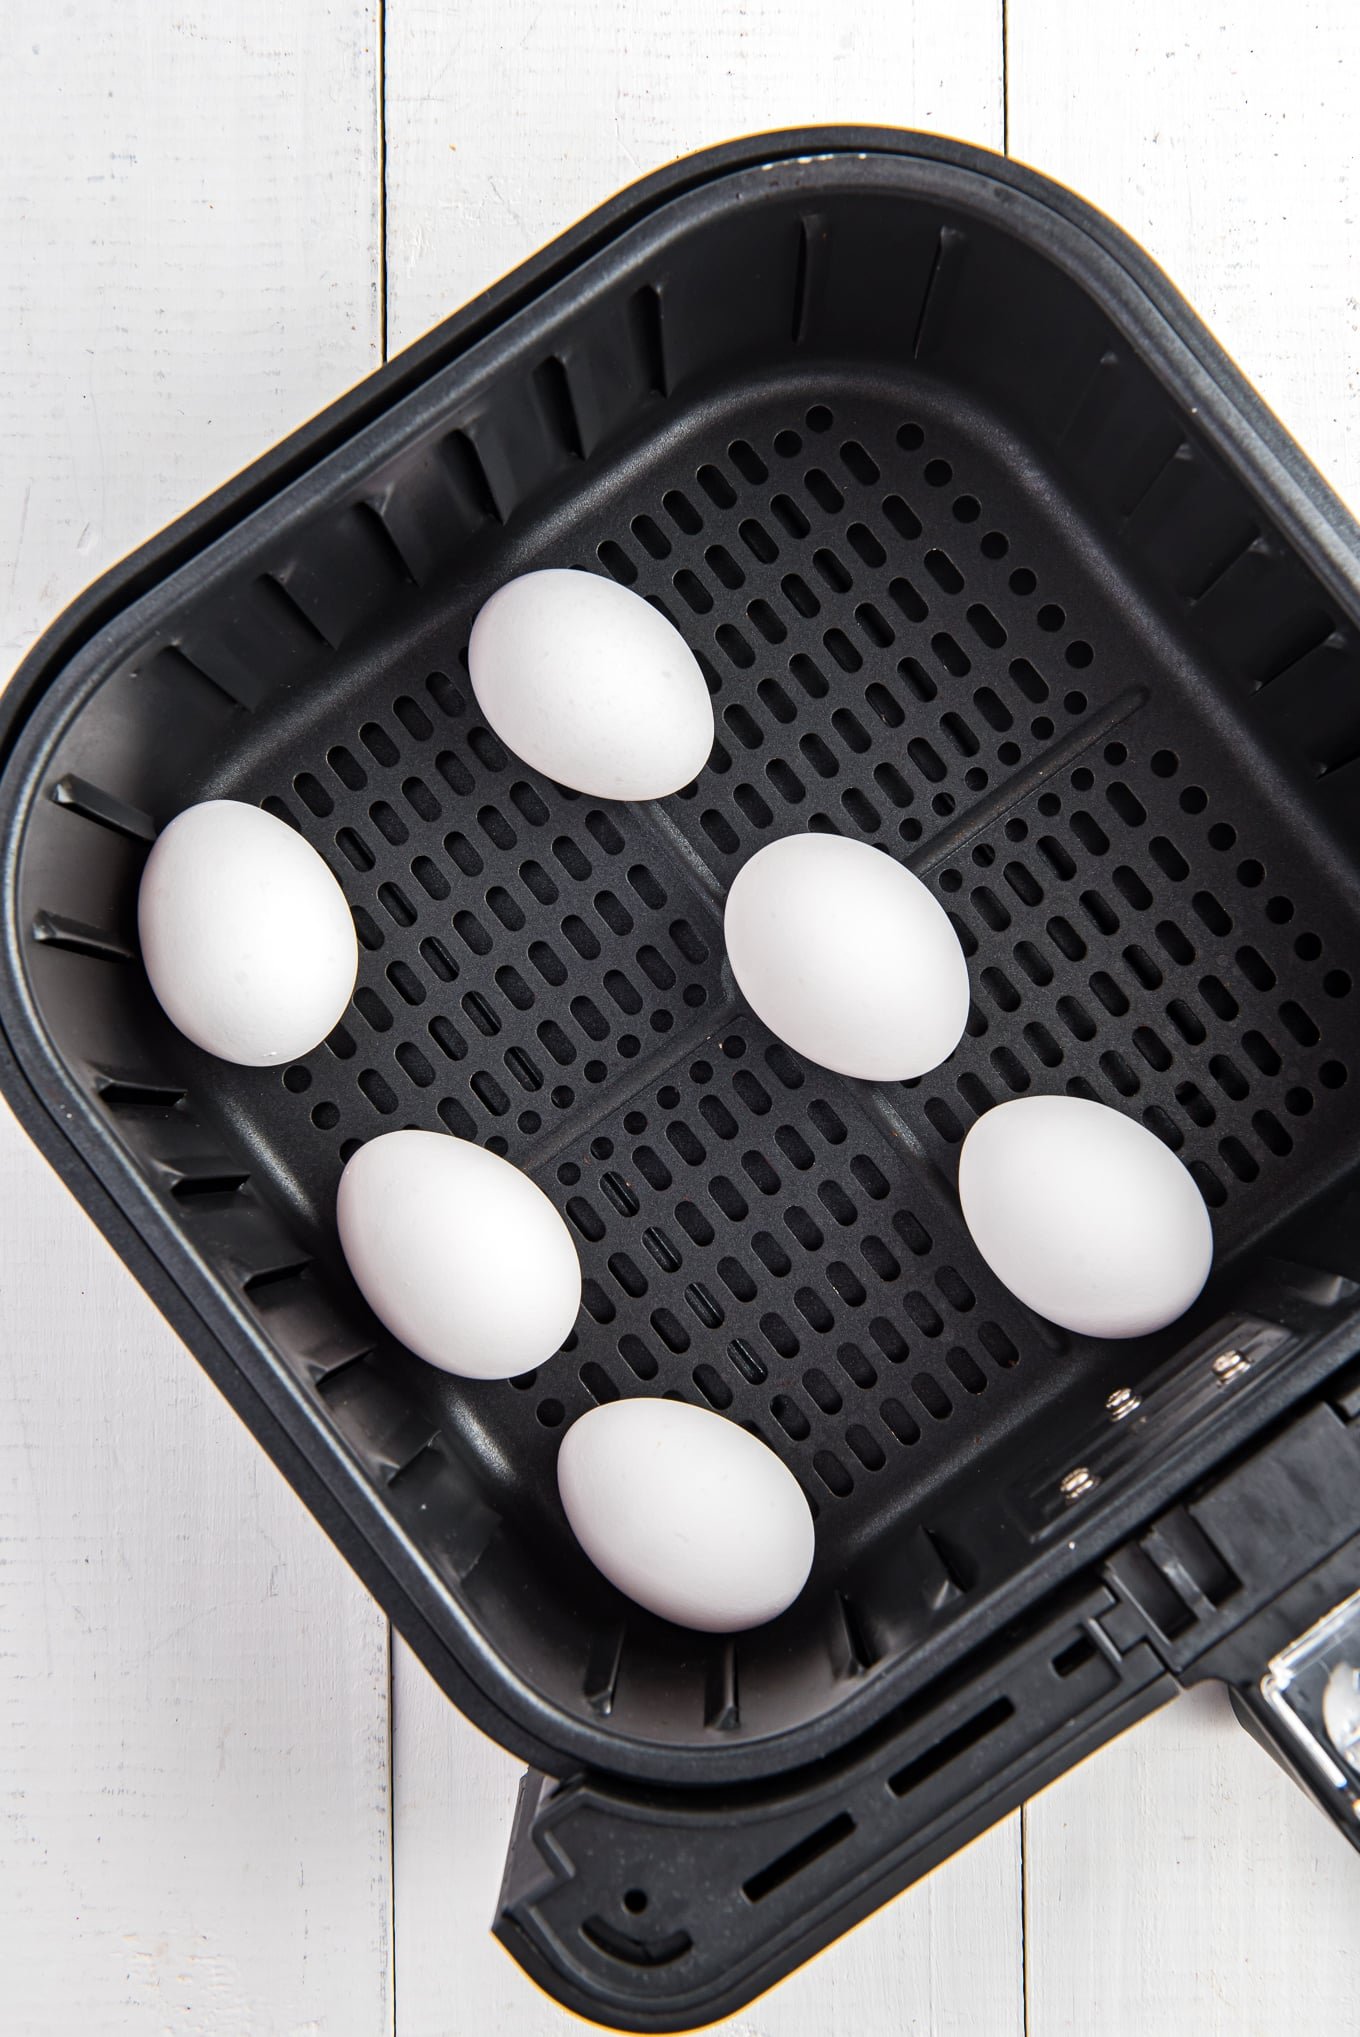 6 eggs in air fryer basket /